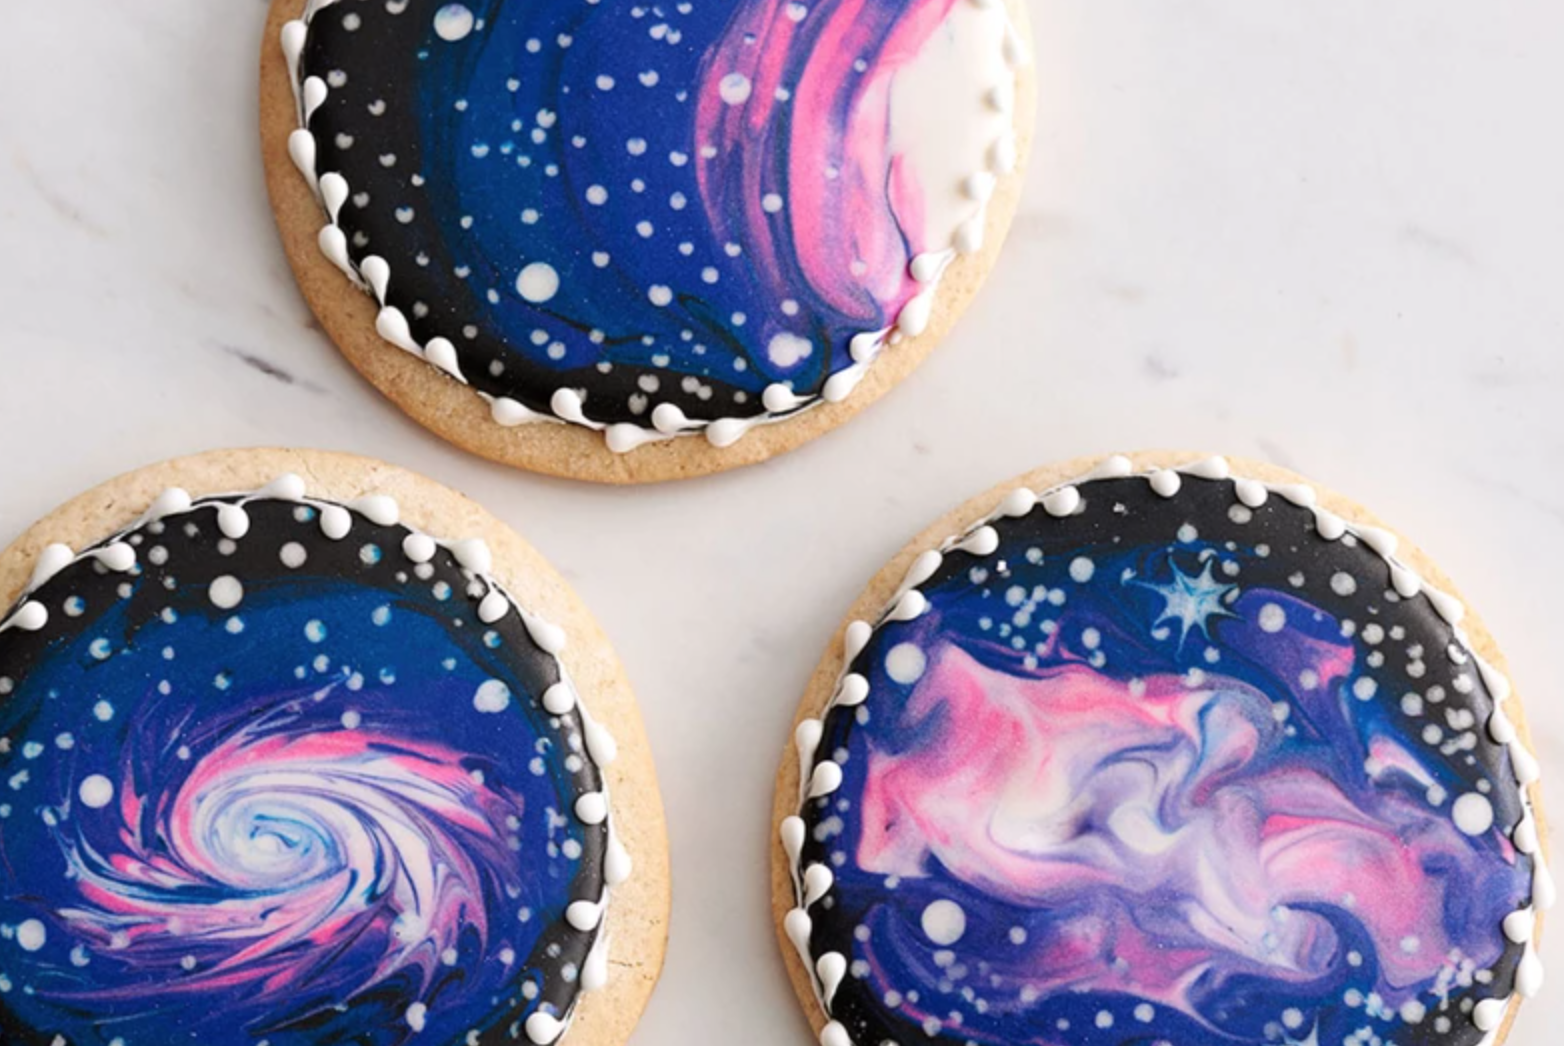 Decorating Sugar Cookies 101